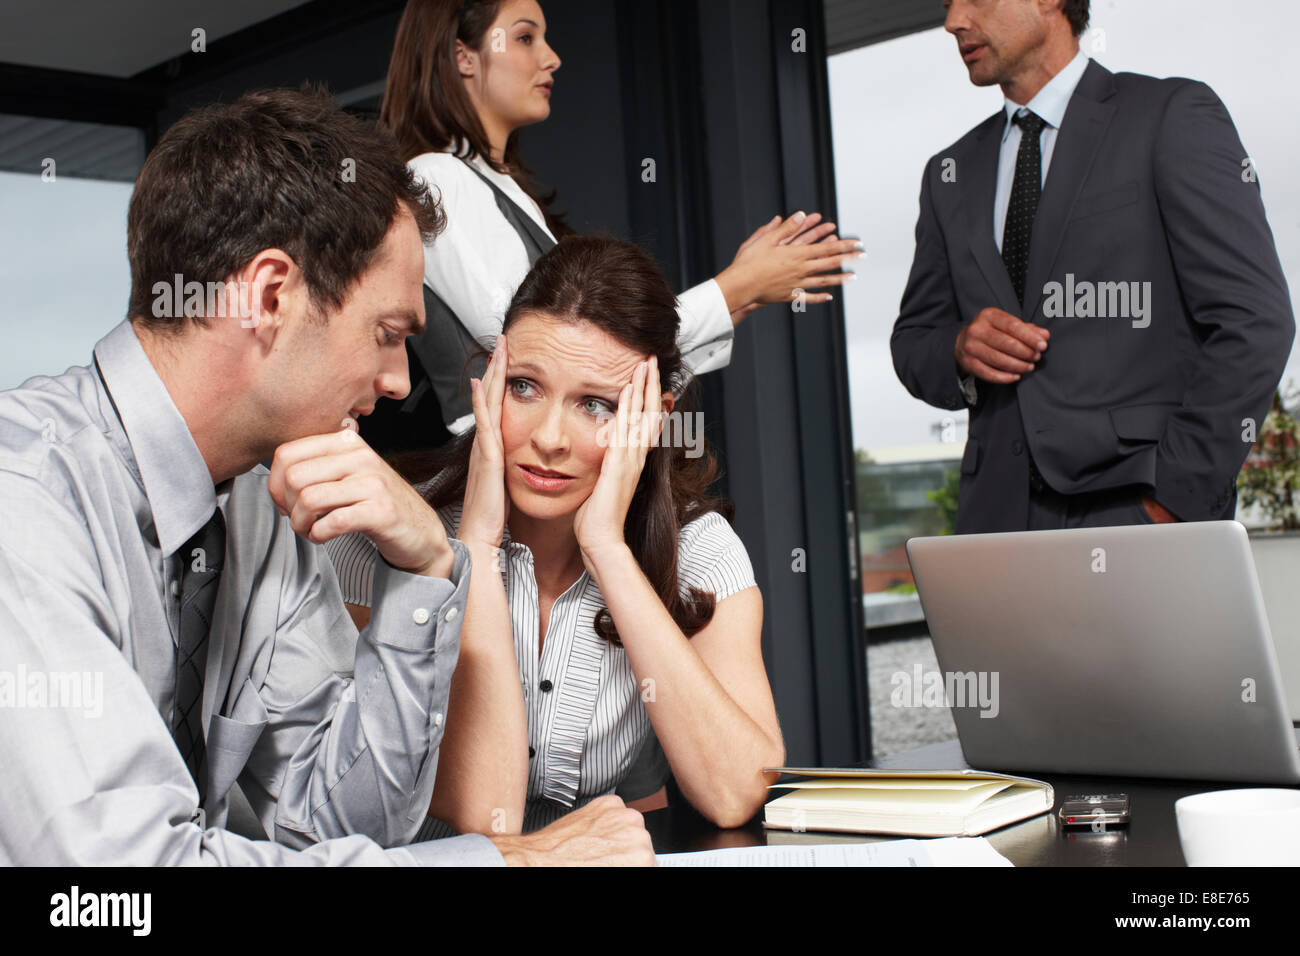 Пользователи обсуждают. Люди в офисе разговаривают. Шум в офисе. Женщины ругаются в офисе. Общение коллег в офисе.